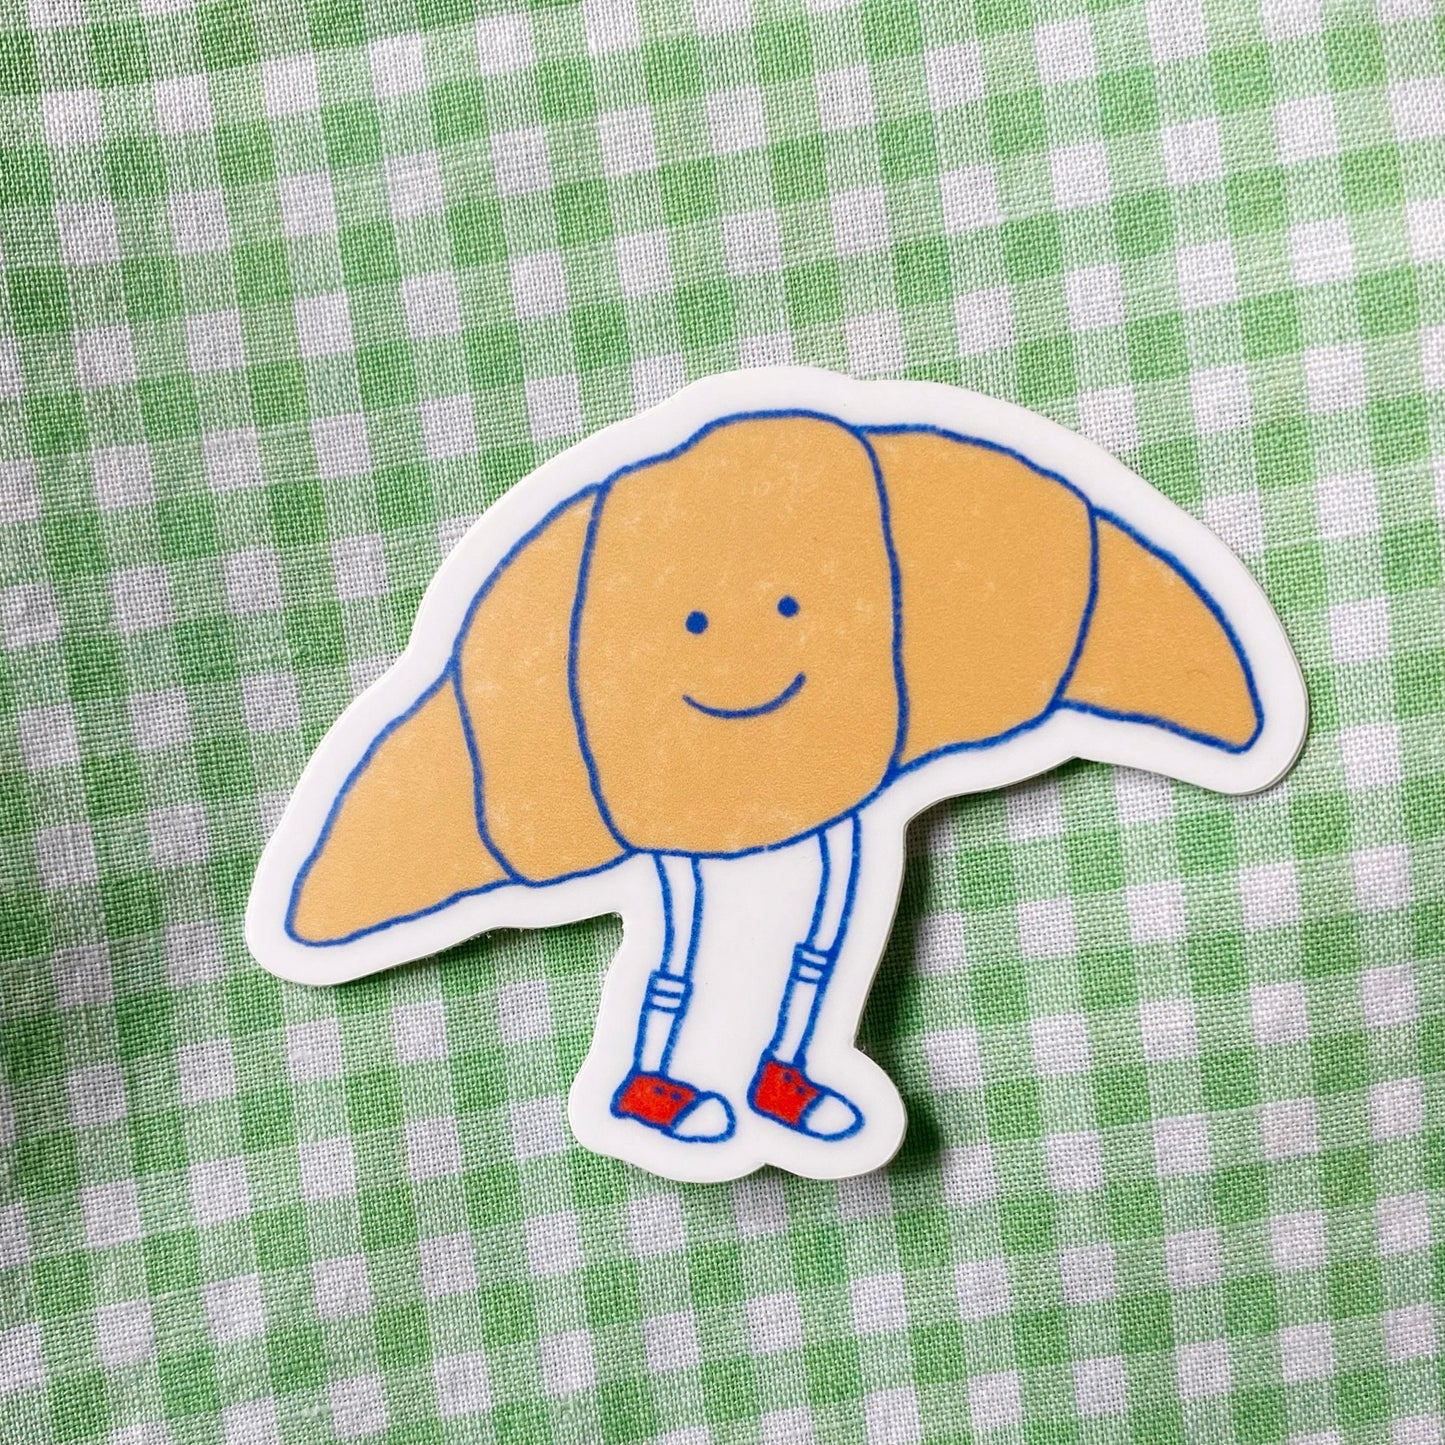 Mr. Croissant Sticker